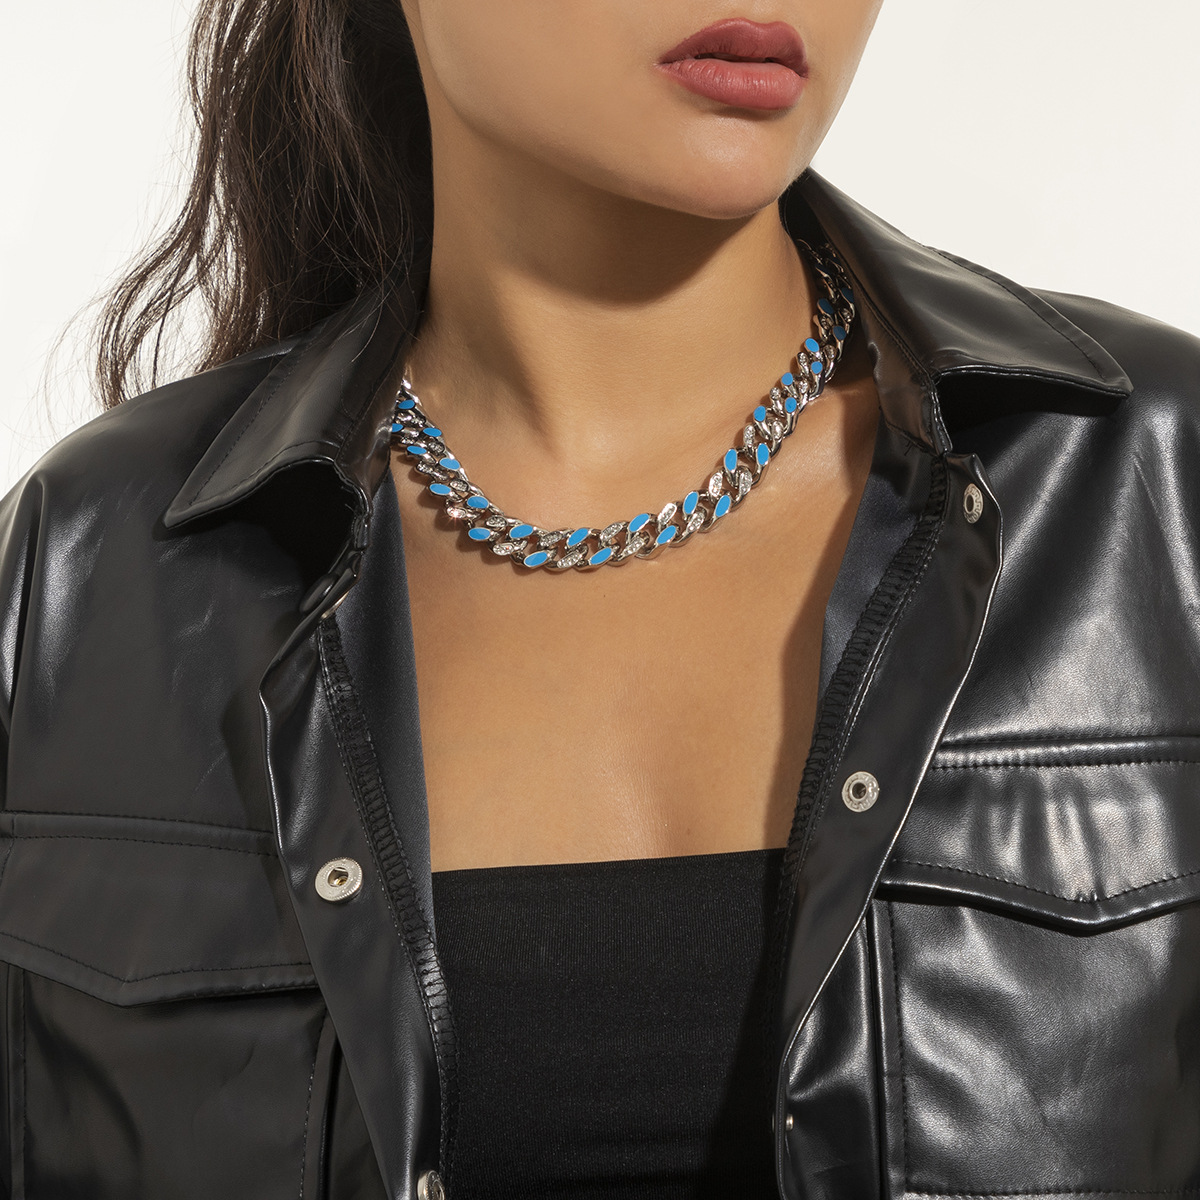 1:blue necklace